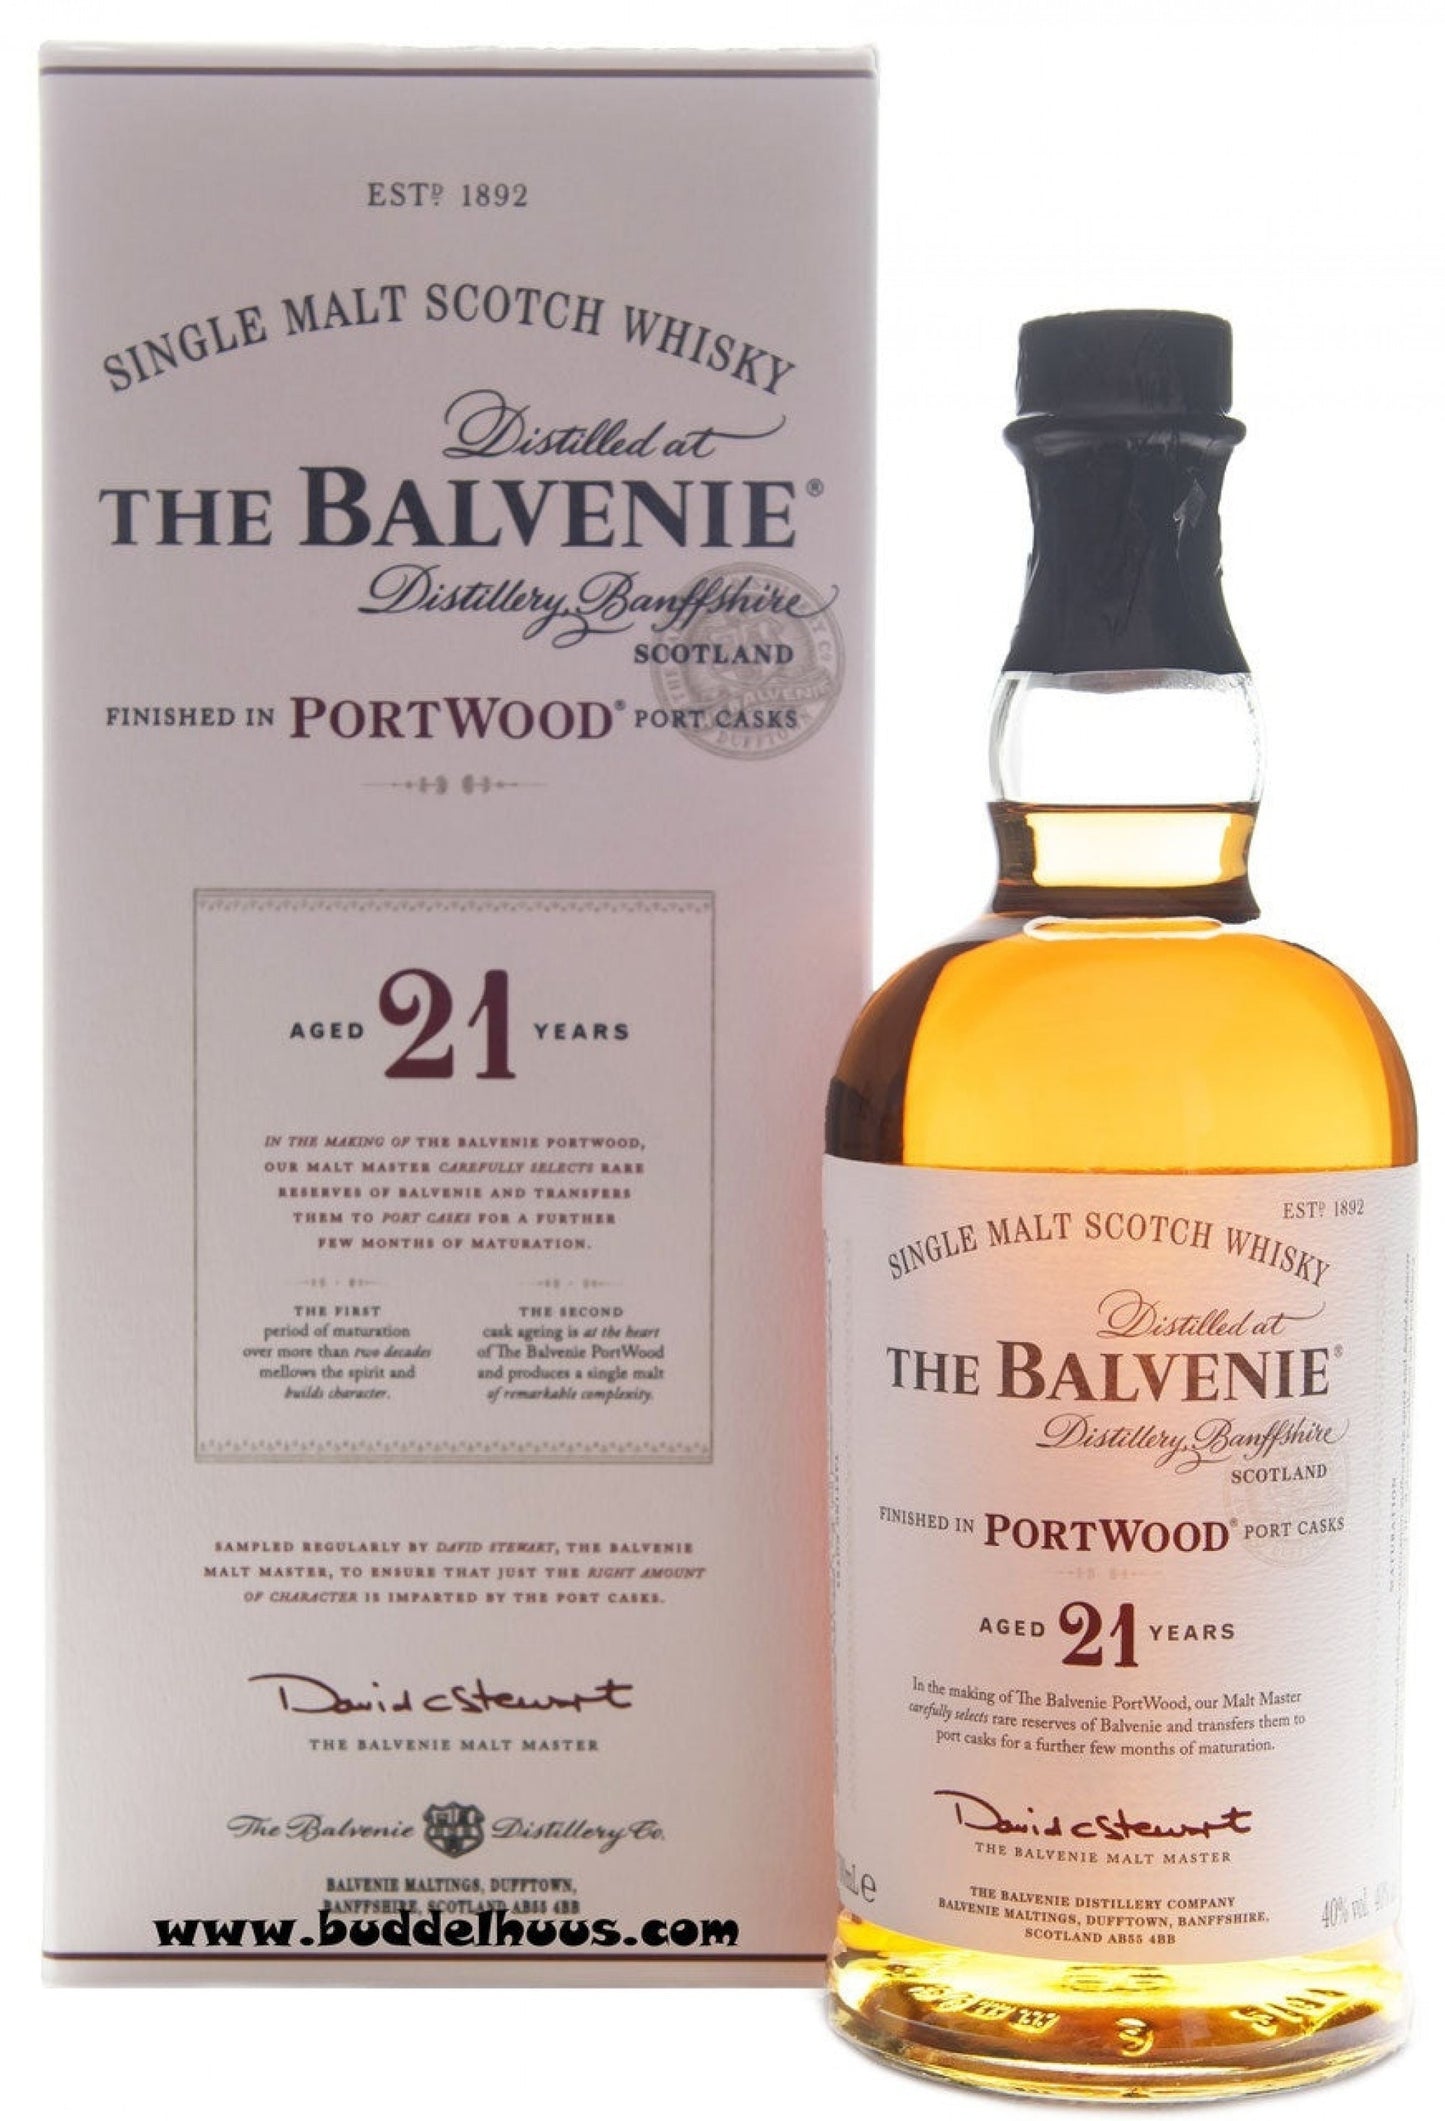 The Balvenie 21 yo Portwood